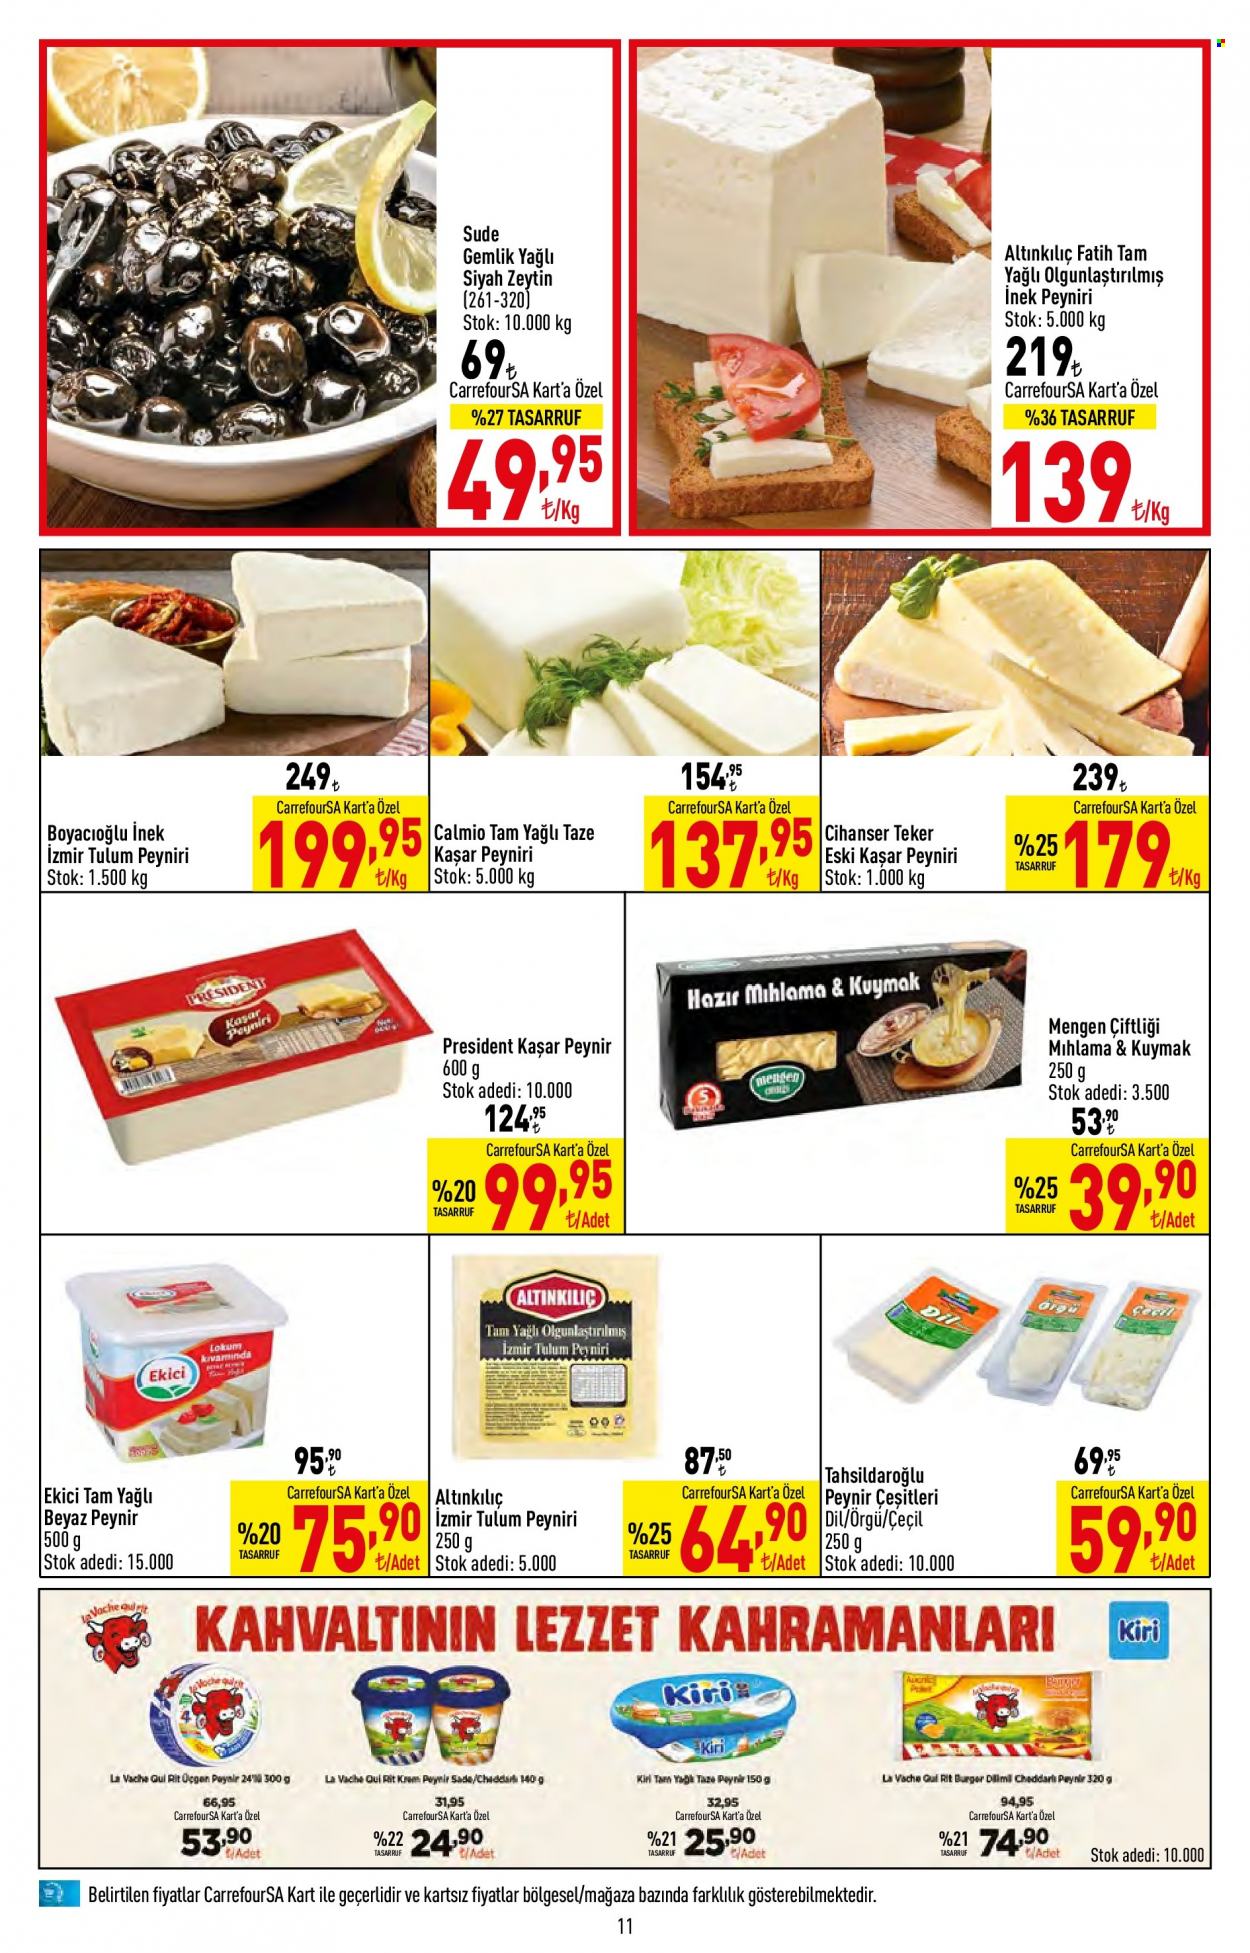 thumbnail - Carrefour aktüel ürünler, broşür  - 11.17.2022 - 11.30.2022 - Satıştaki ürünler - Tahsildaroglu, peynir, kaşar peyniri, beyaz peynir, boyacioğlu, Cihanser, Ekici, eski kaşar, siyah zeytin, zeytin, tulum. Sayfa 11.